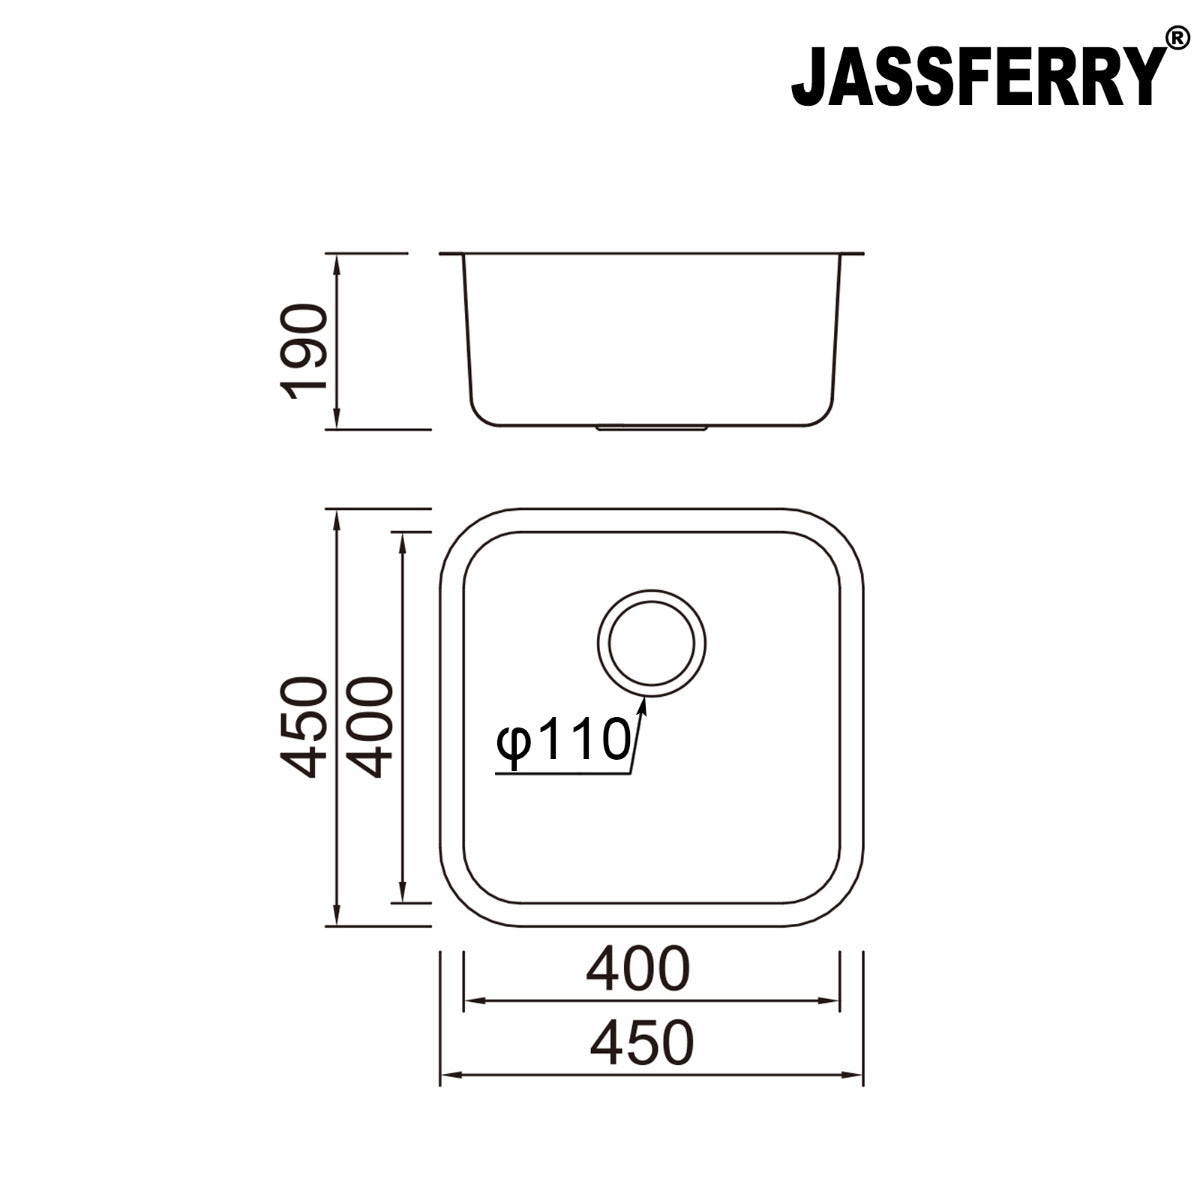 JassferryJASSFERRY 450 x 450 mm Undermount Stainless Steel Kitchen Sink 1 Bowl - 885Kitchen Sinks